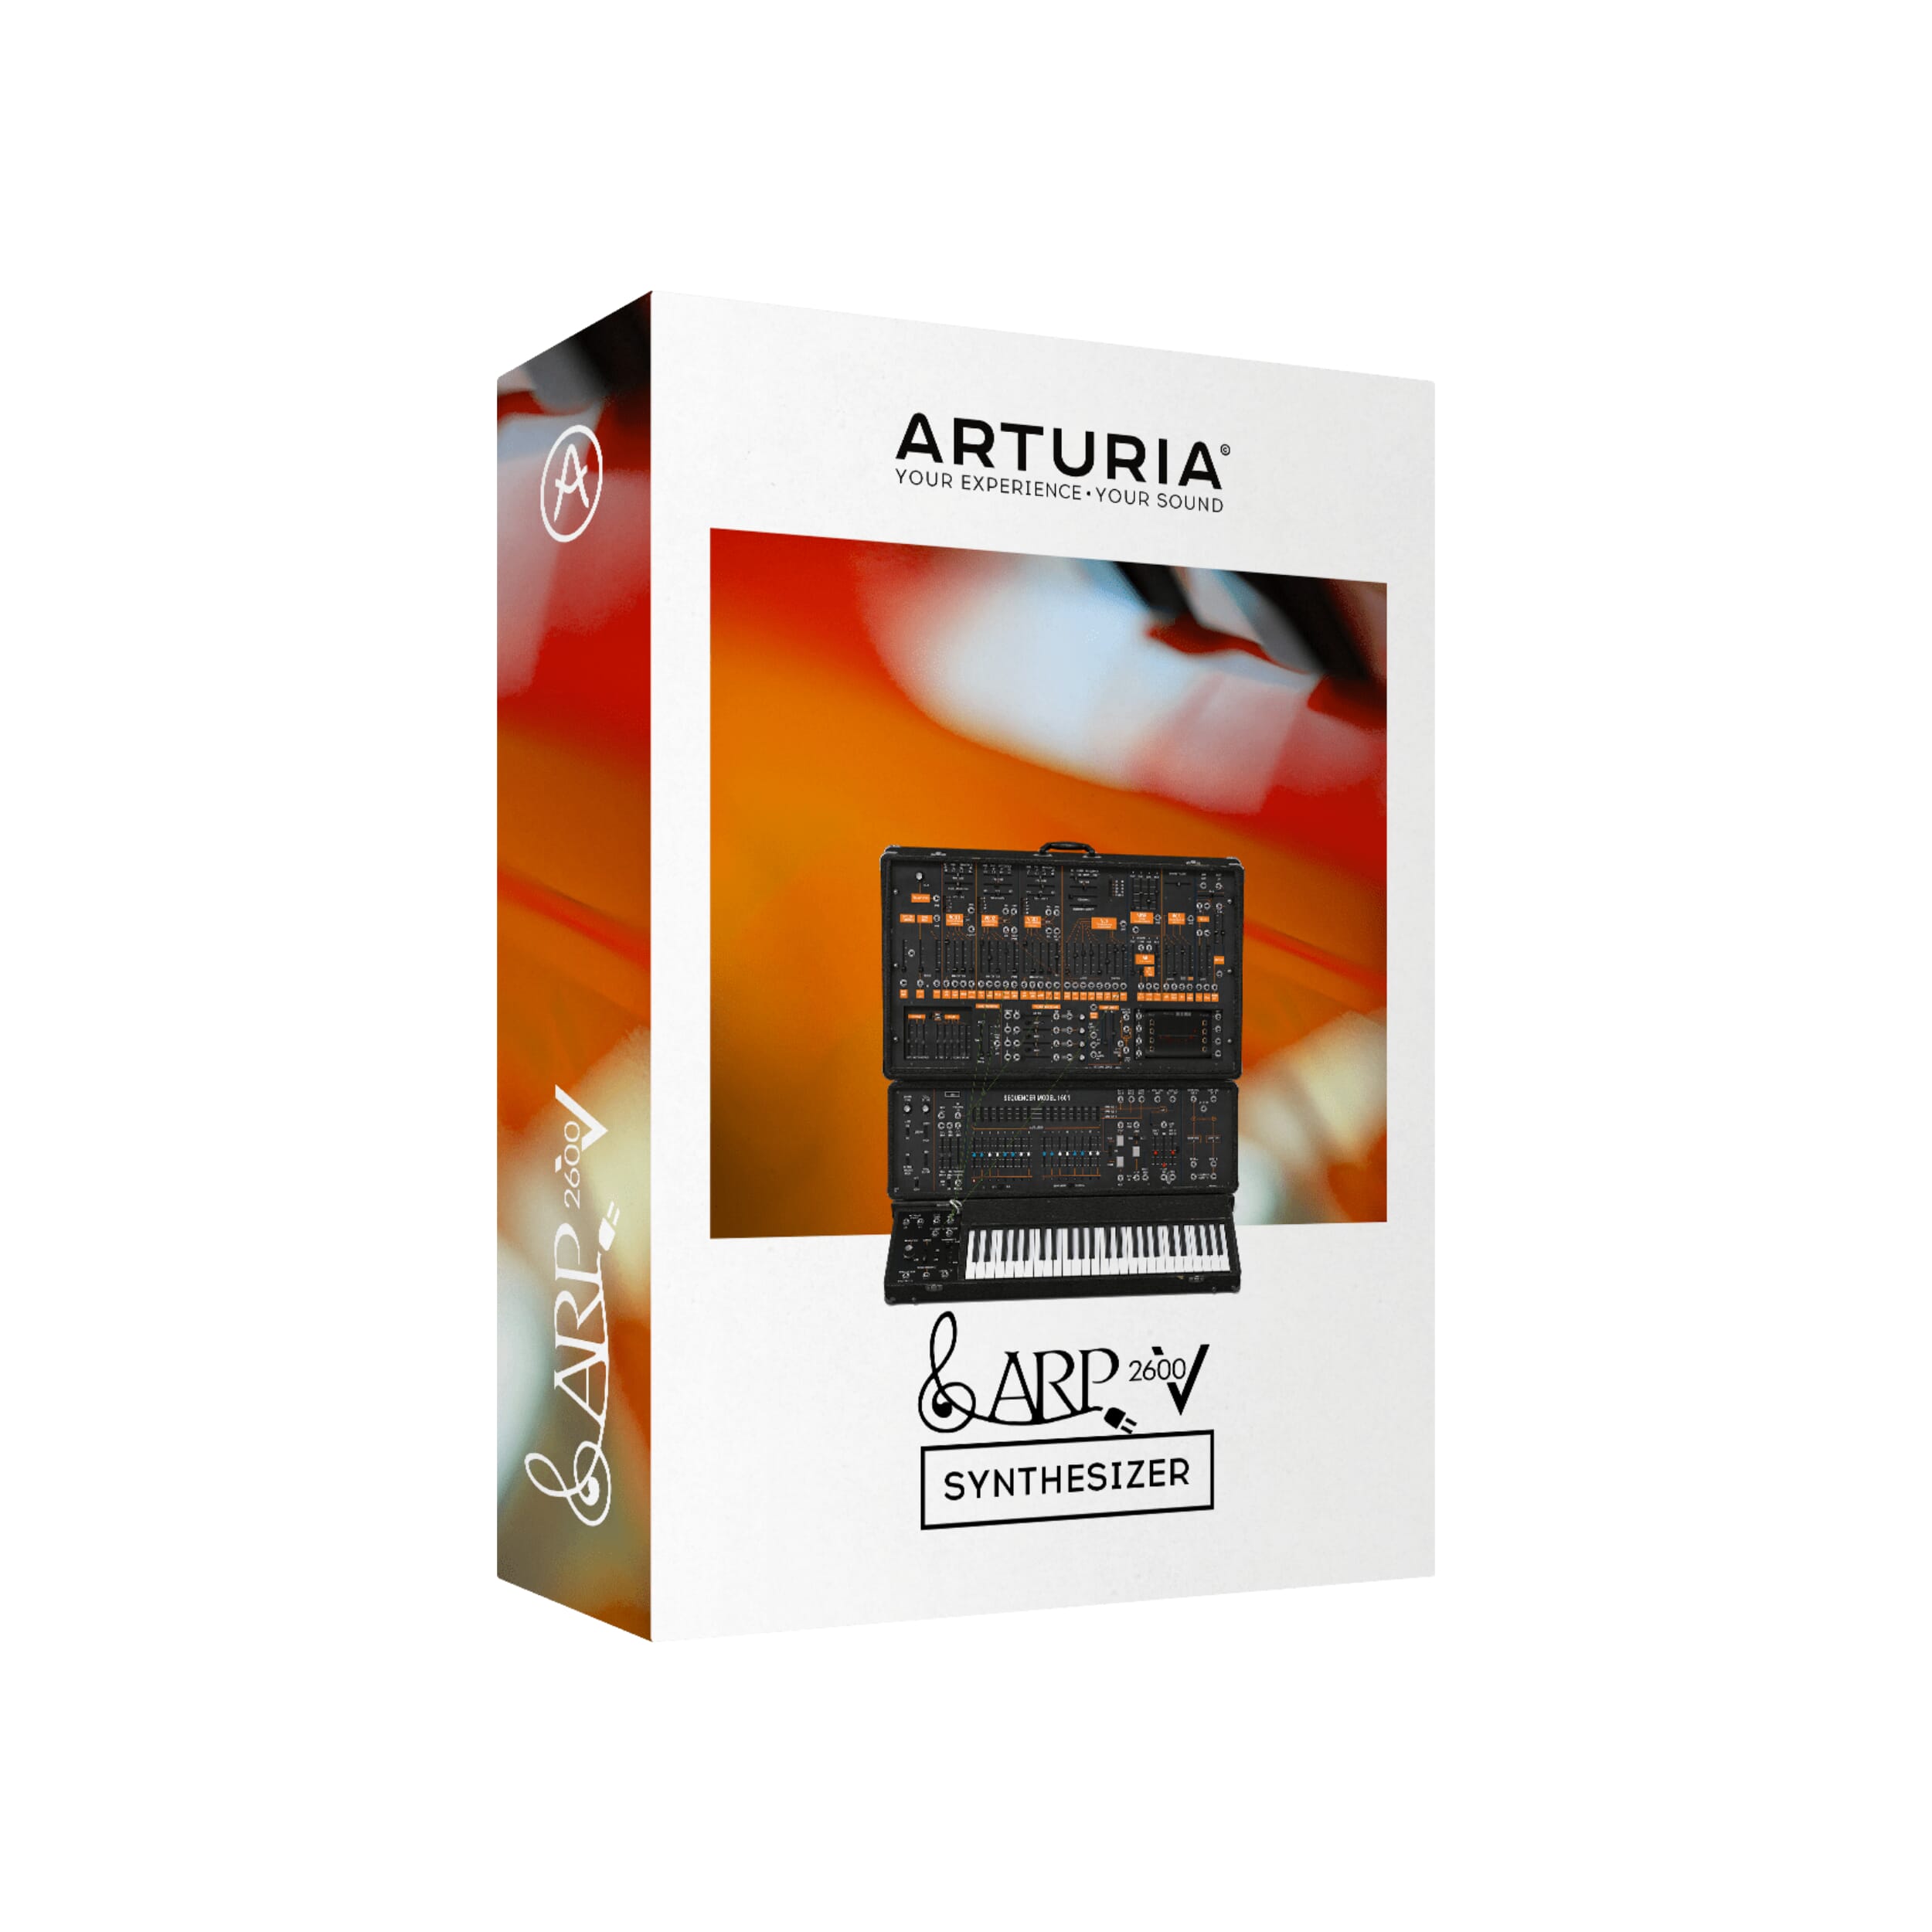 Arturia Piano V3 download the last version for apple